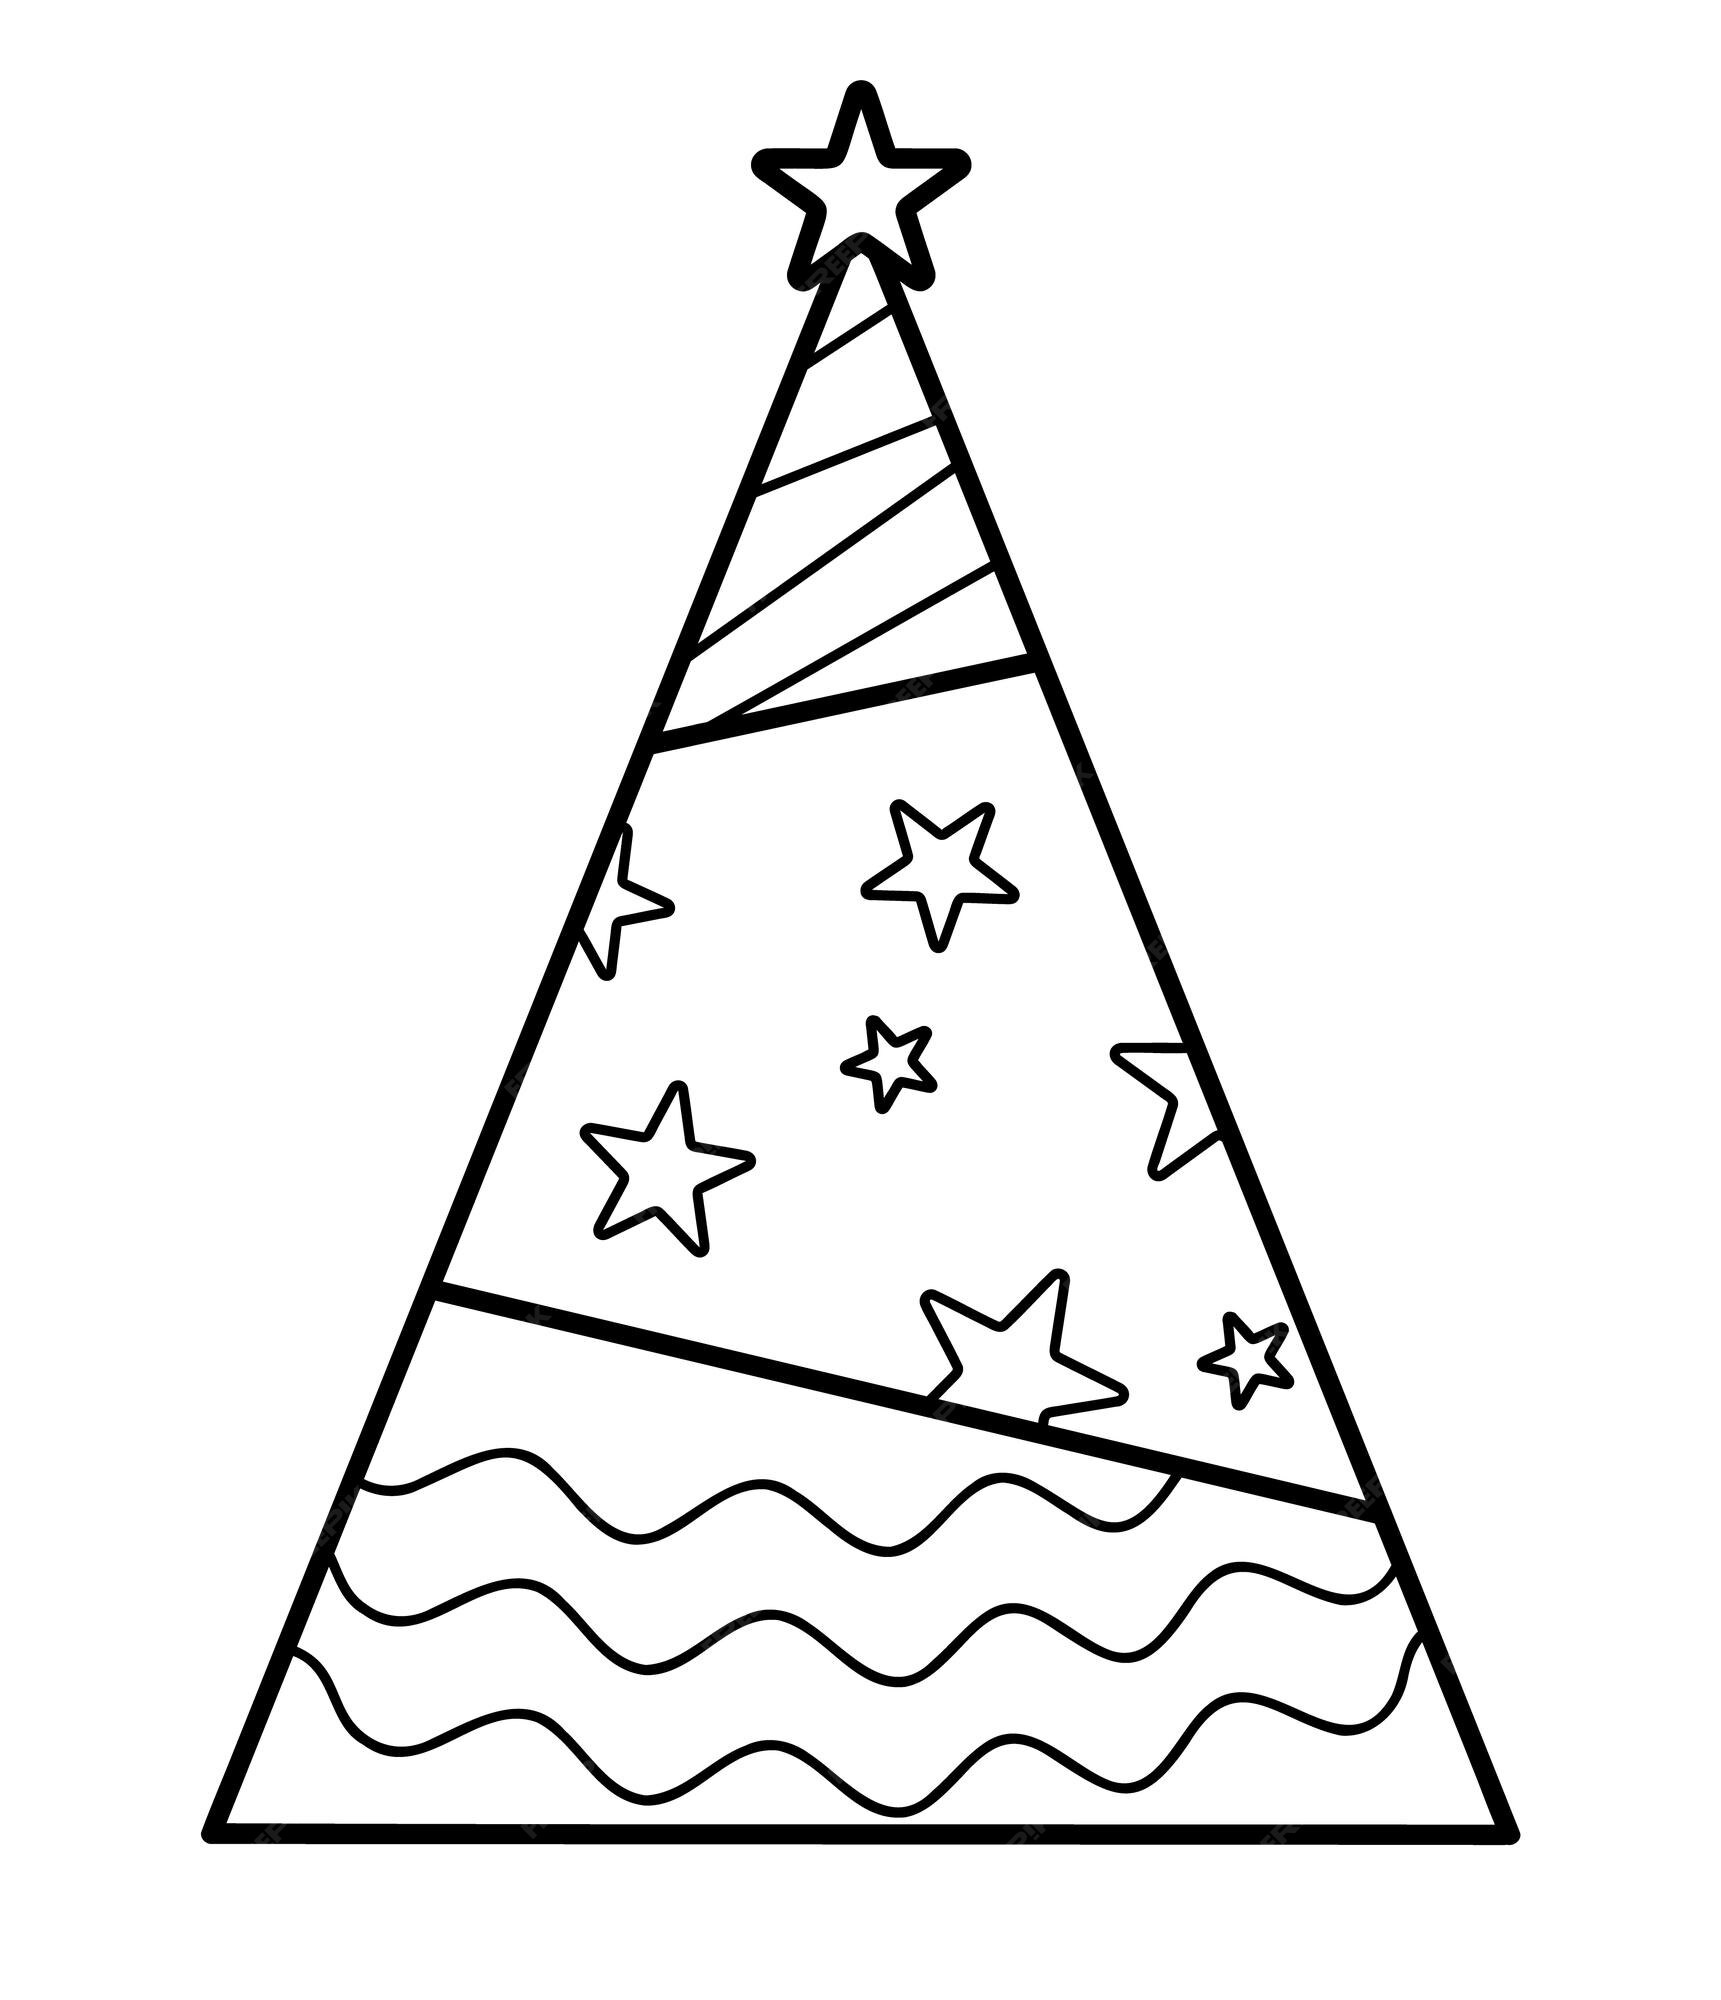 livro de colorir de natal ou página para crianças. ilustração em vetor  preto e branco de chapéu de papai noel 8719825 Vetor no Vecteezy